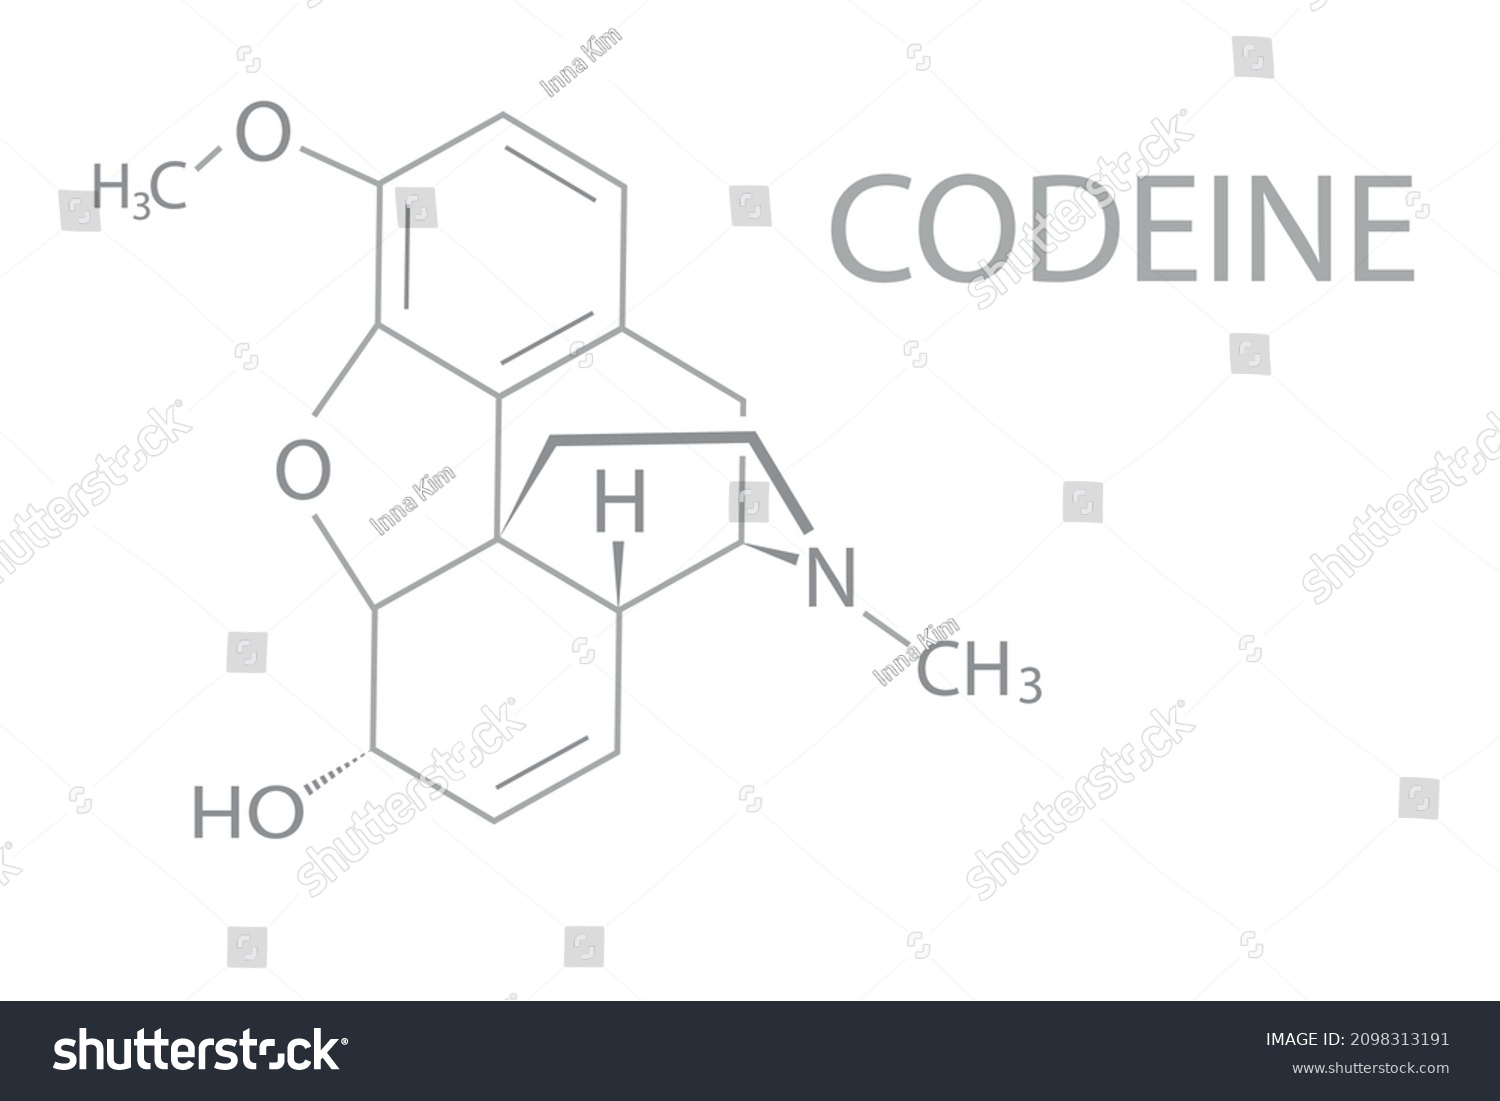 SVG of Codeine molecular skeletal chemical formula. svg